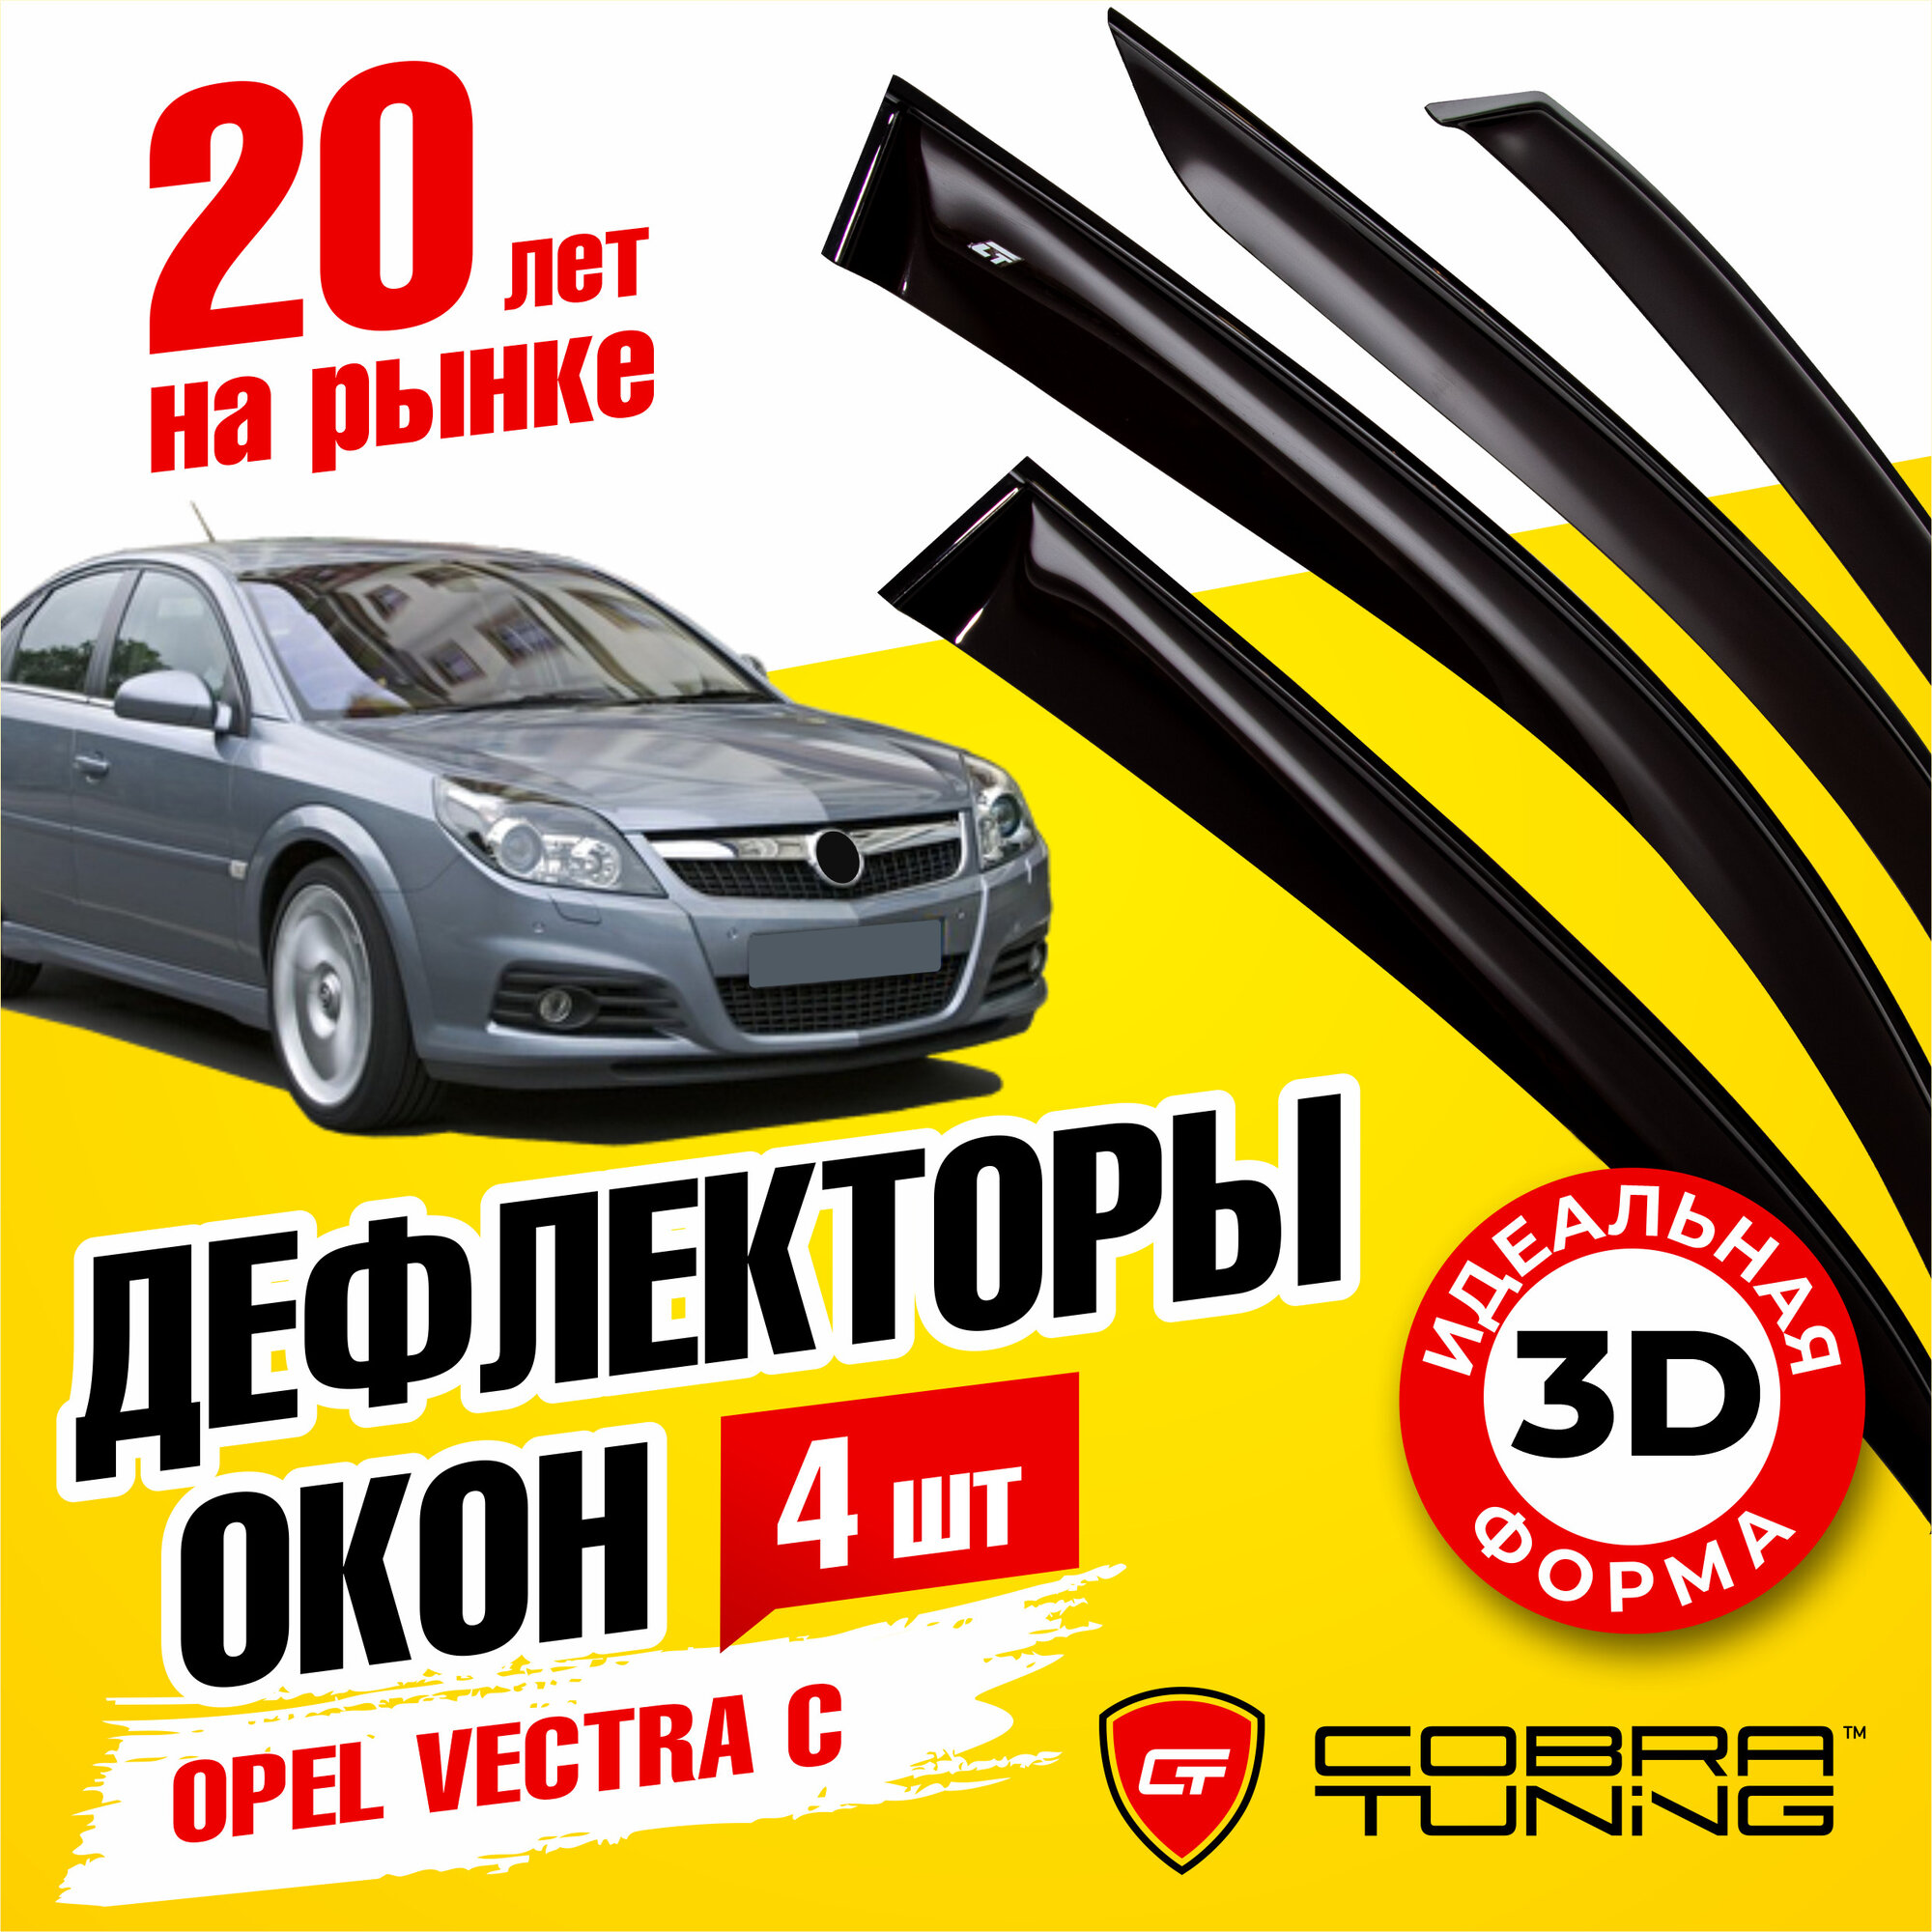 Дефлектор окон Cobra Tuning O11202 для Opel Vectra